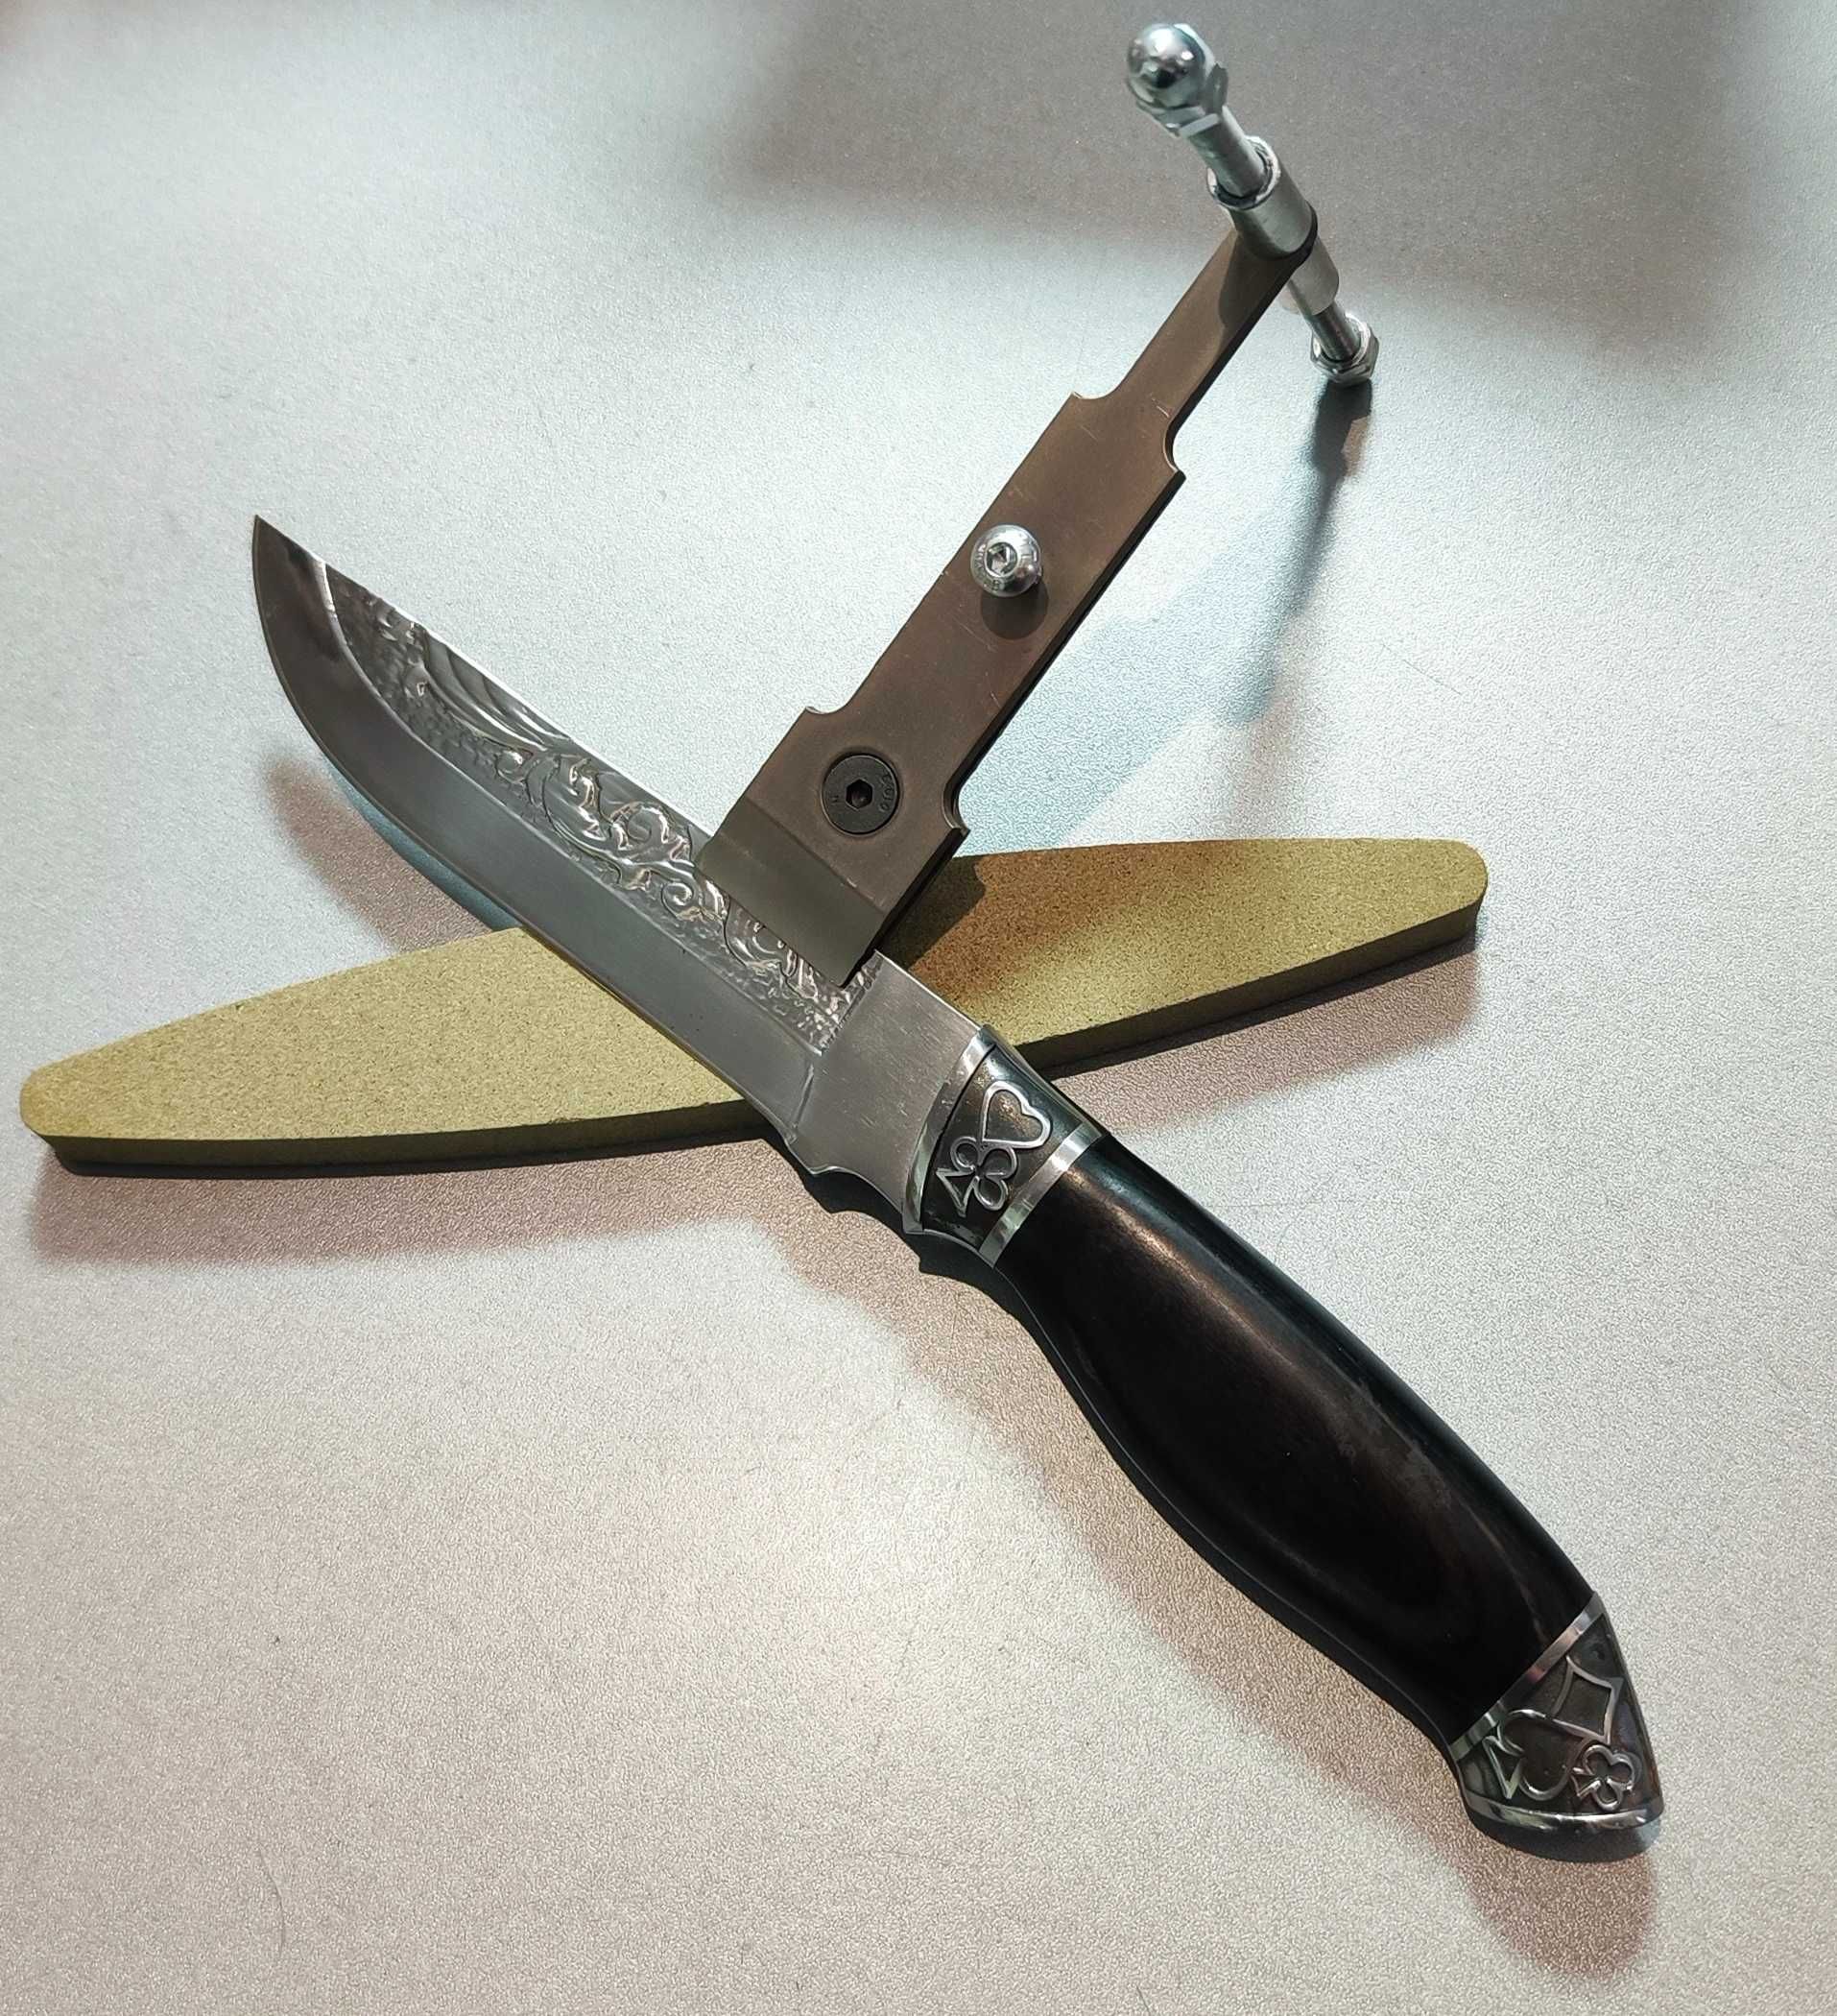 Нова точила для ножів "костыль".